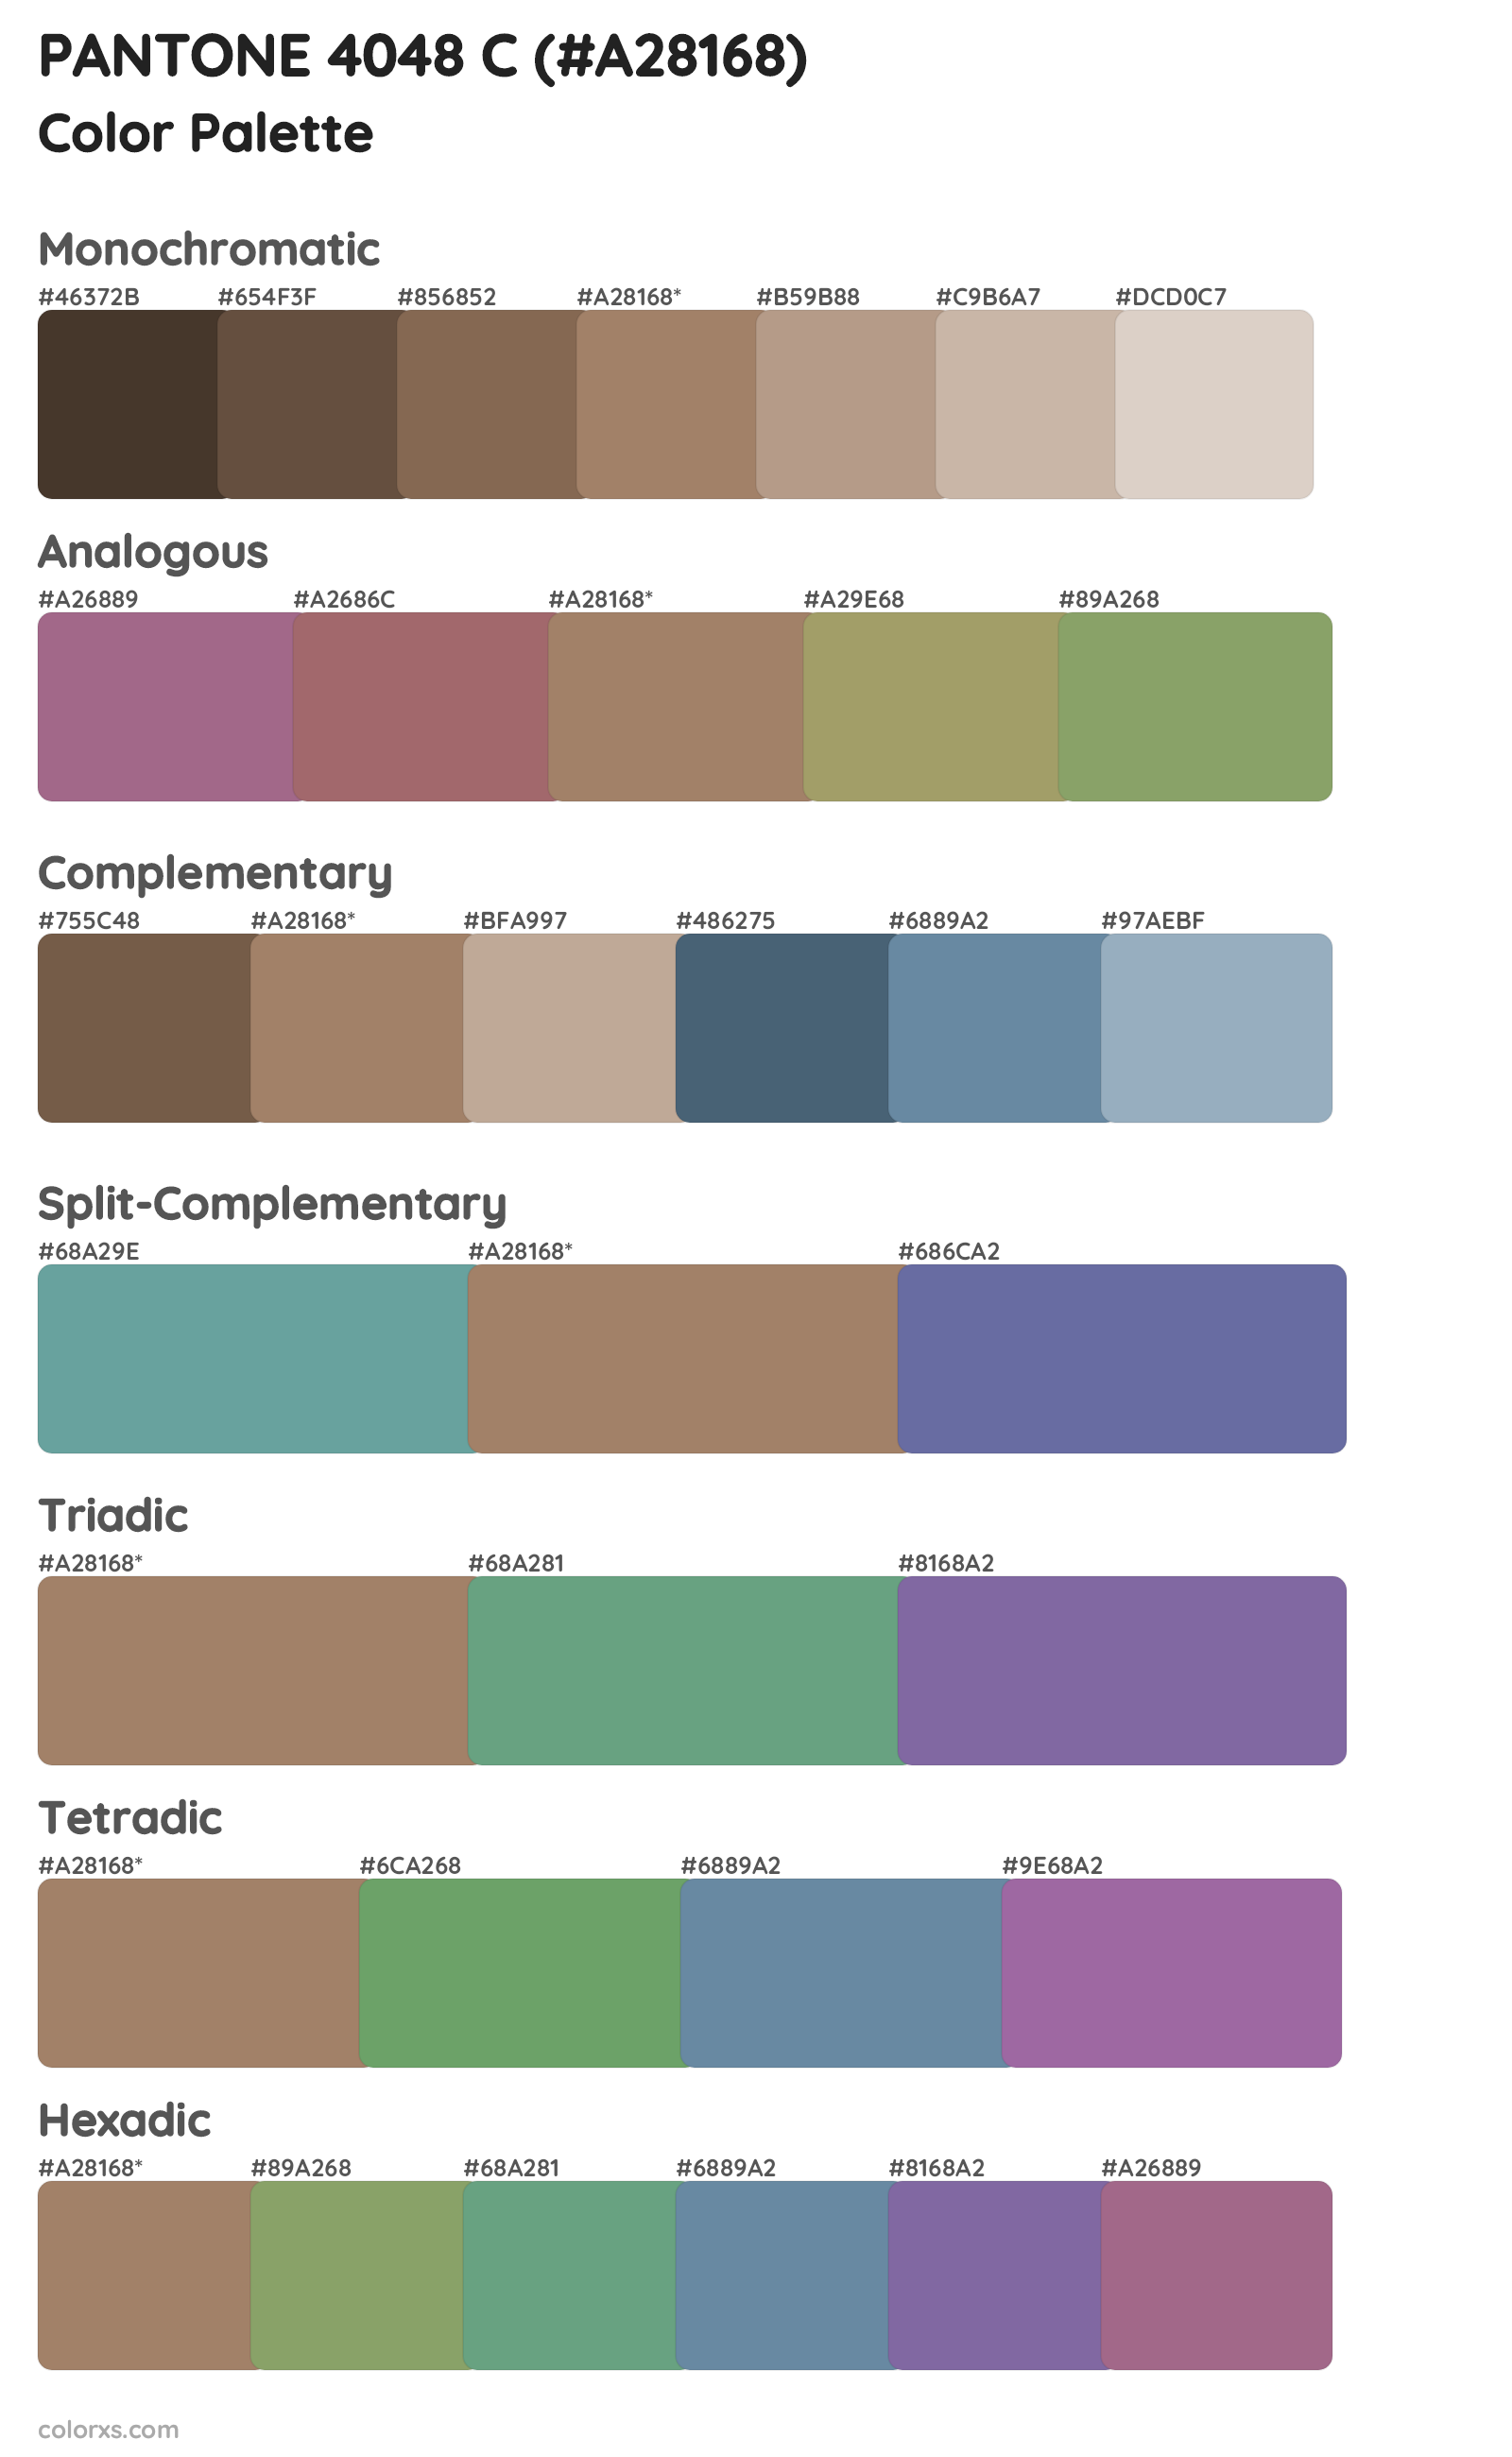 PANTONE 4048 C Color Scheme Palettes